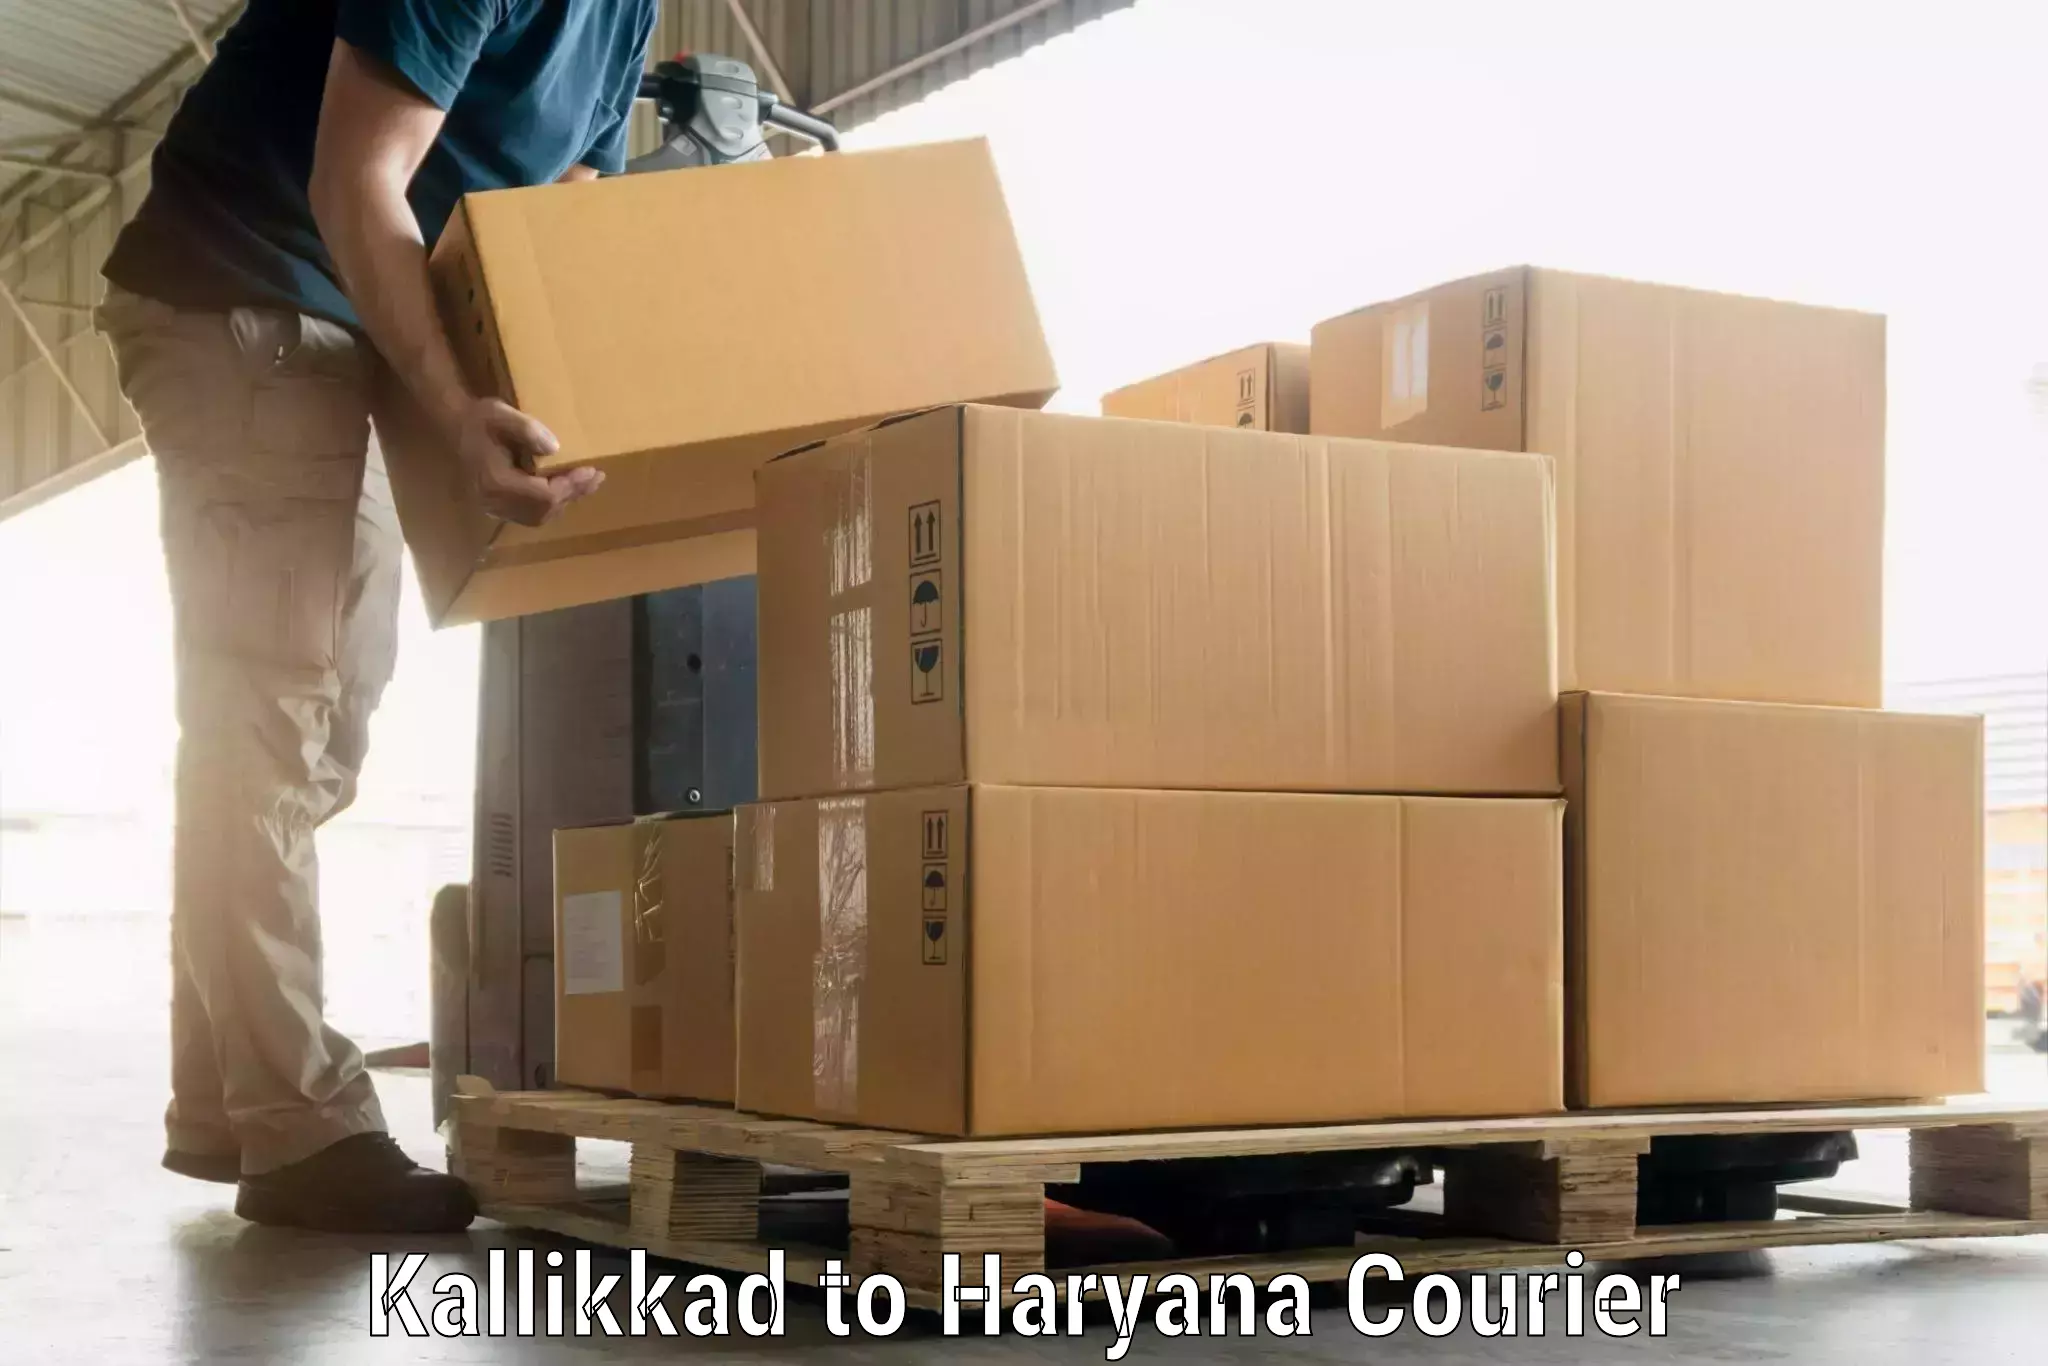 Baggage delivery technology Kallikkad to Haryana